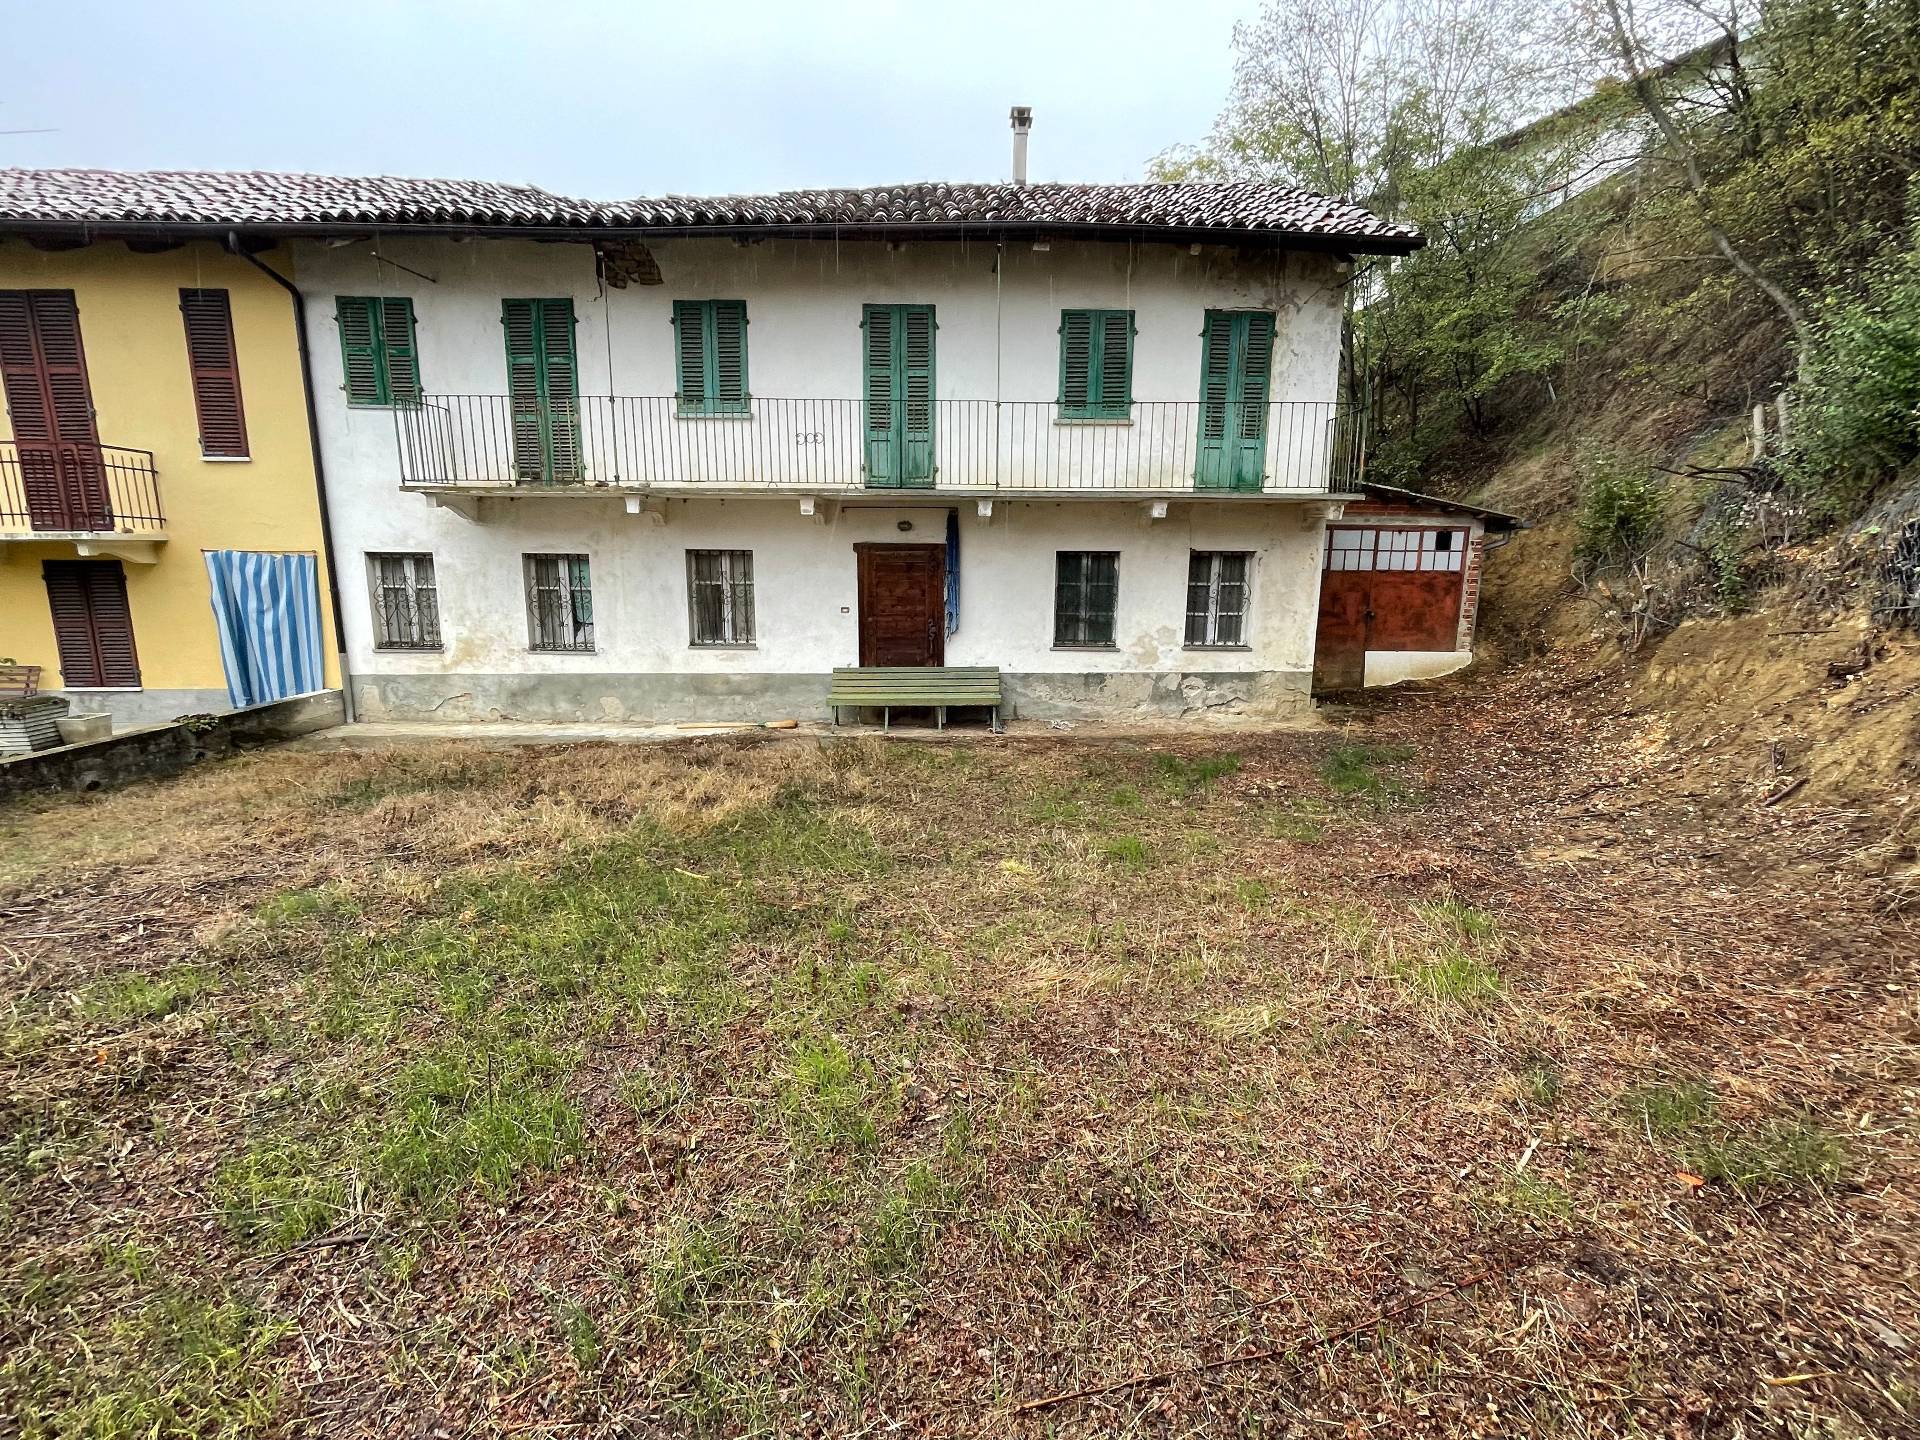 Soluzione Indipendente in vendita a Rocca d'Arazzo, 5 locali, zona Località: Collina, prezzo € 60.000 | PortaleAgenzieImmobiliari.it